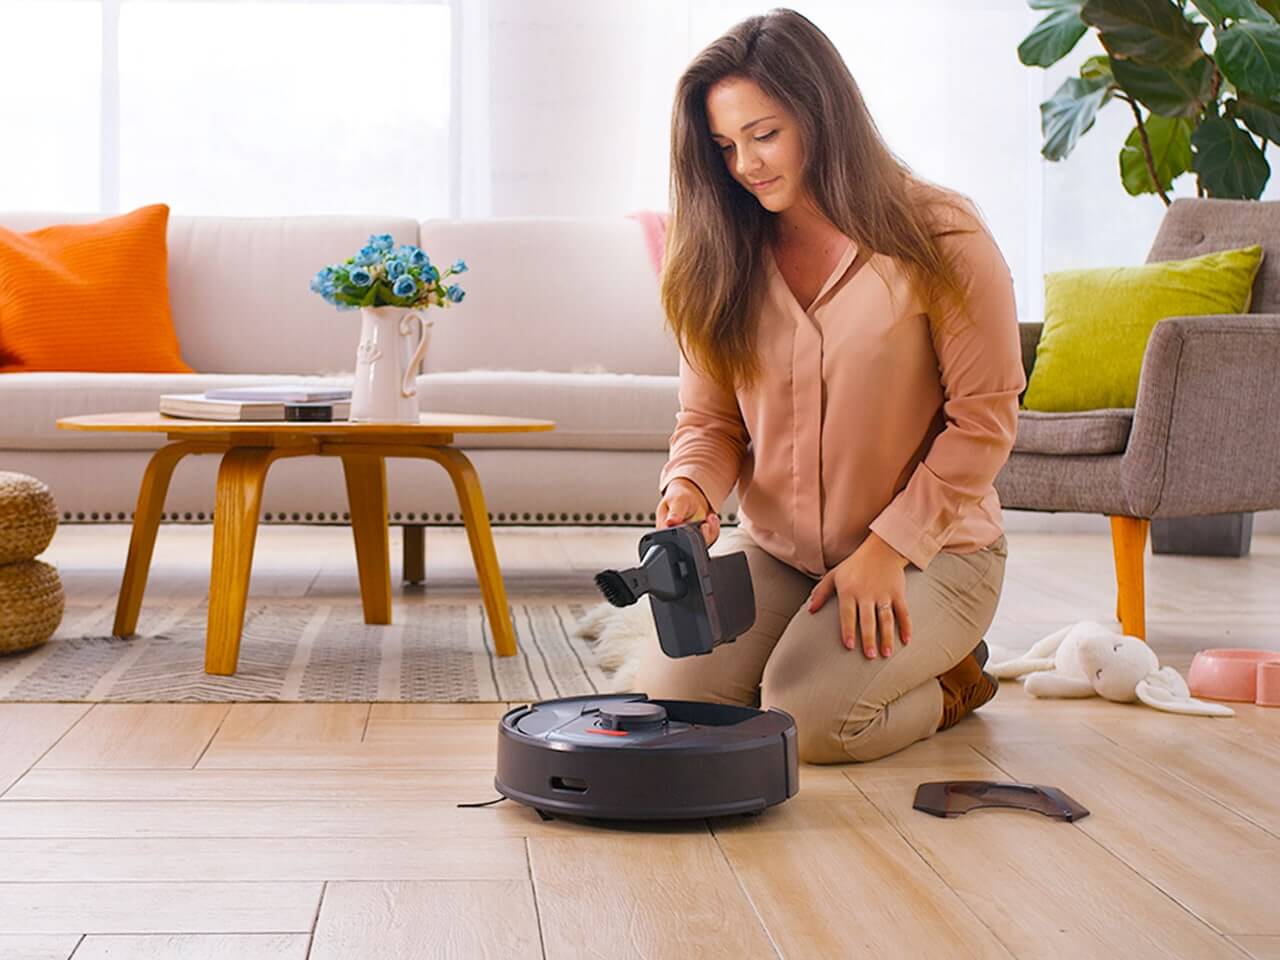 Робот пылесос vacuum cleaner r1. Робот пылесос Tab Smart Vacuum Cleaner. Робот пылесос Клиан робот. Пылесос в интерьере. Женщина и робот пылесос.